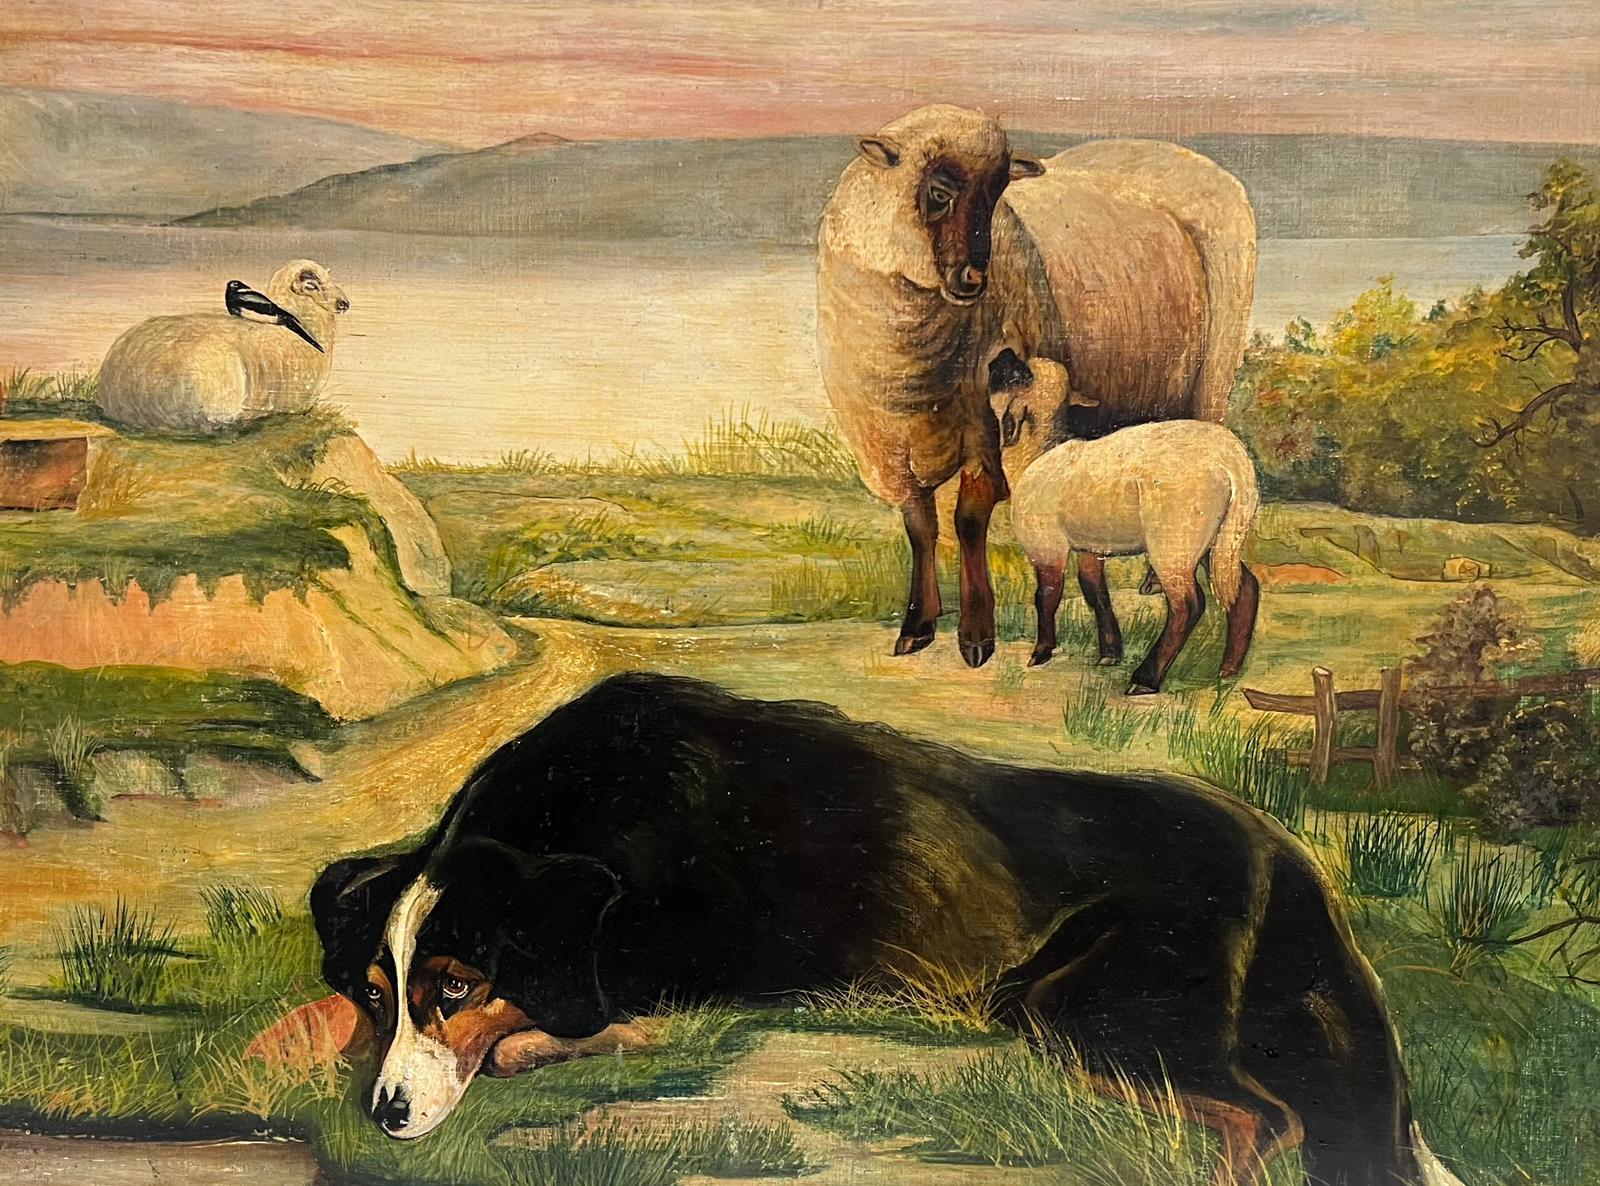 19th century English Folk Art School Landscape Painting - Highland Sheep Dog & Sheep in Loch Landscape English Naive Folk Art Oil Painting